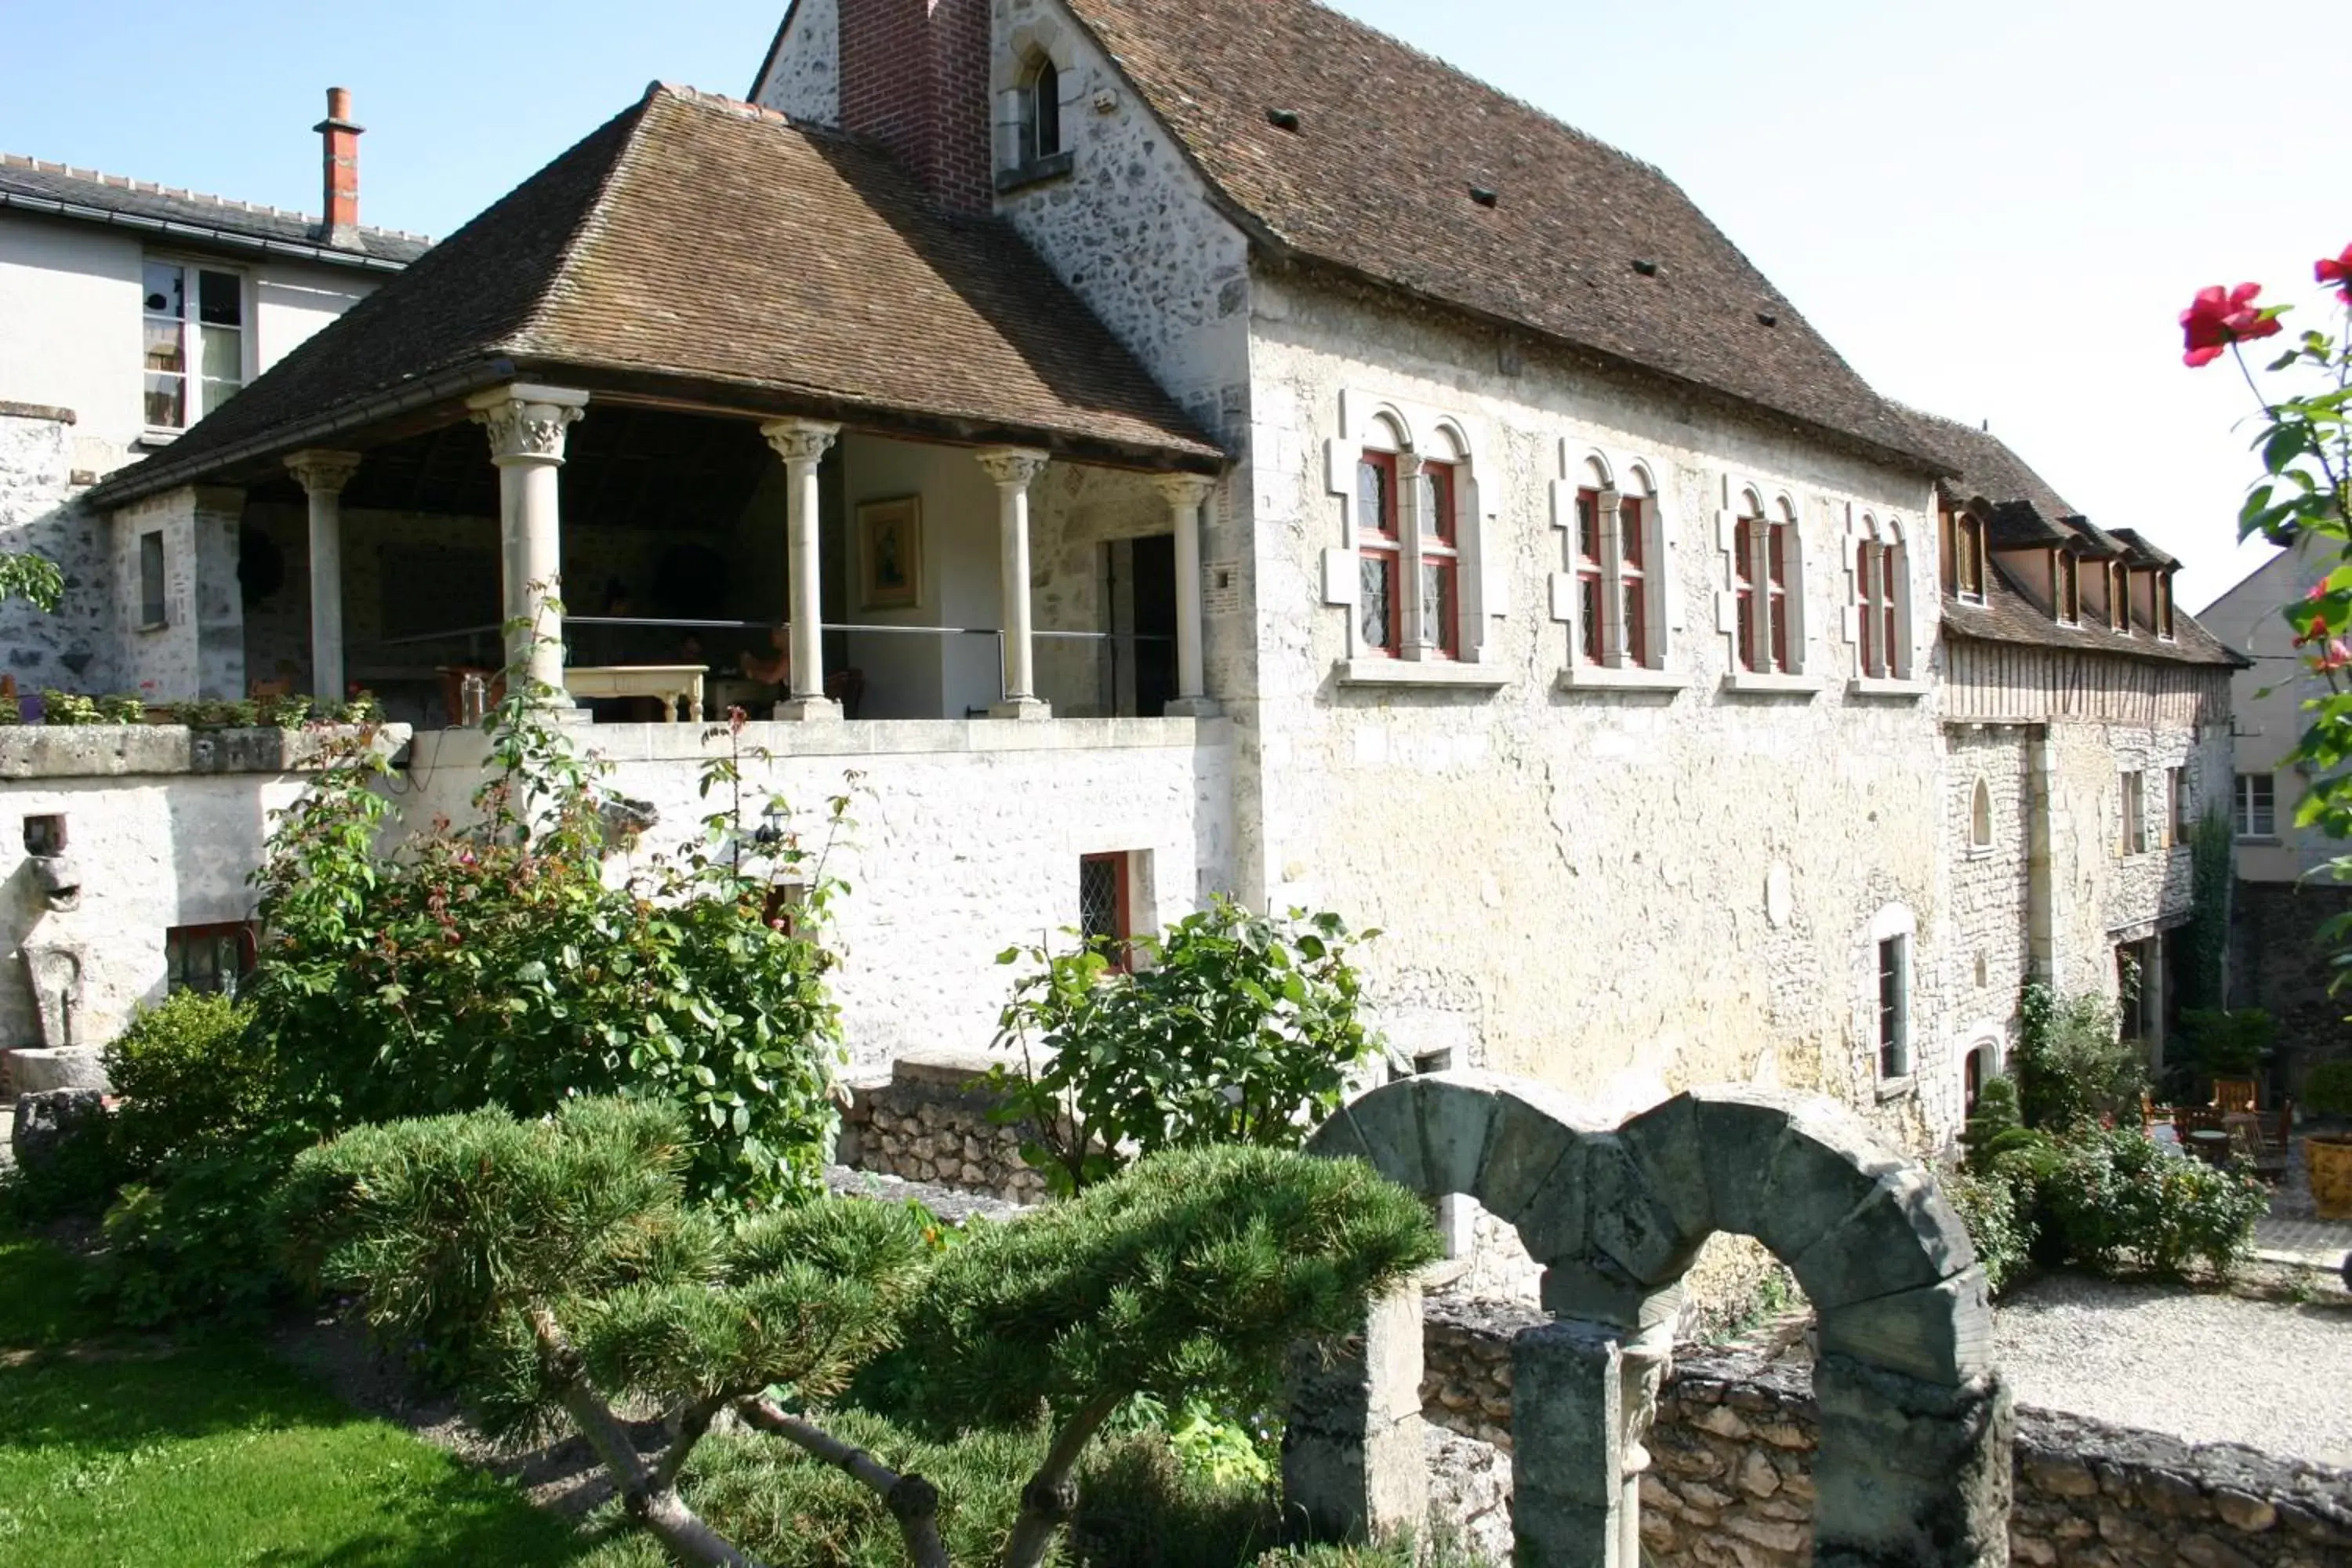 Garden, Property Building in Demeure des Vieux Bains